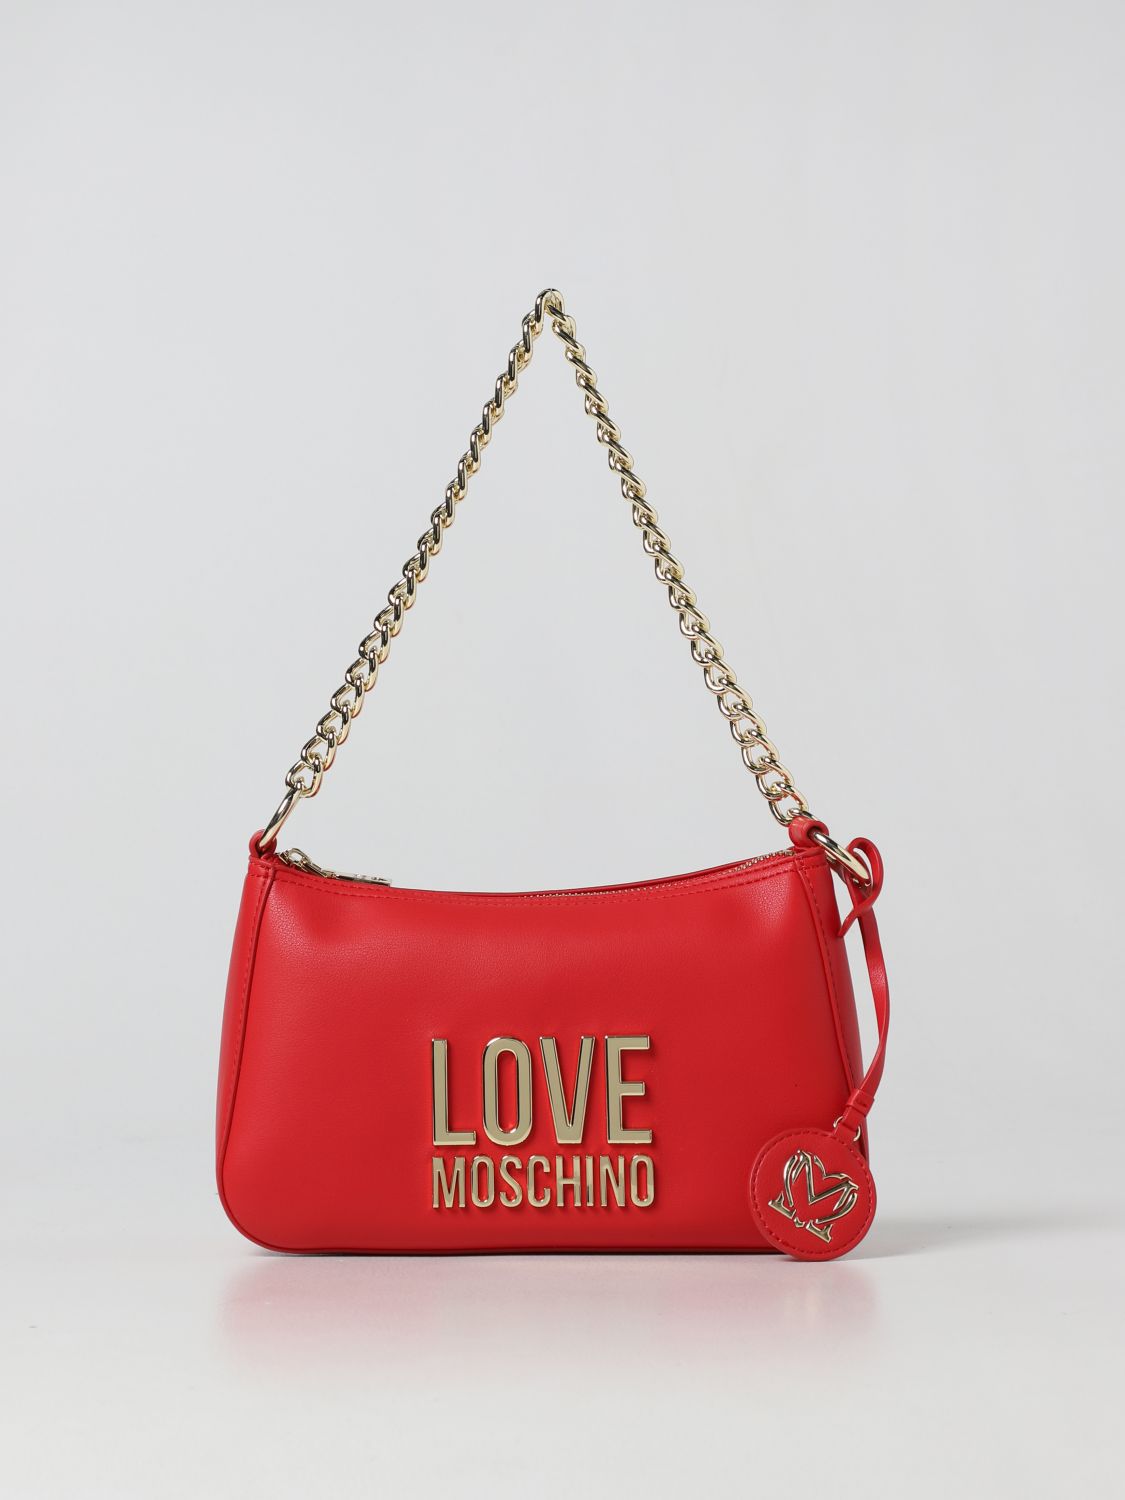 Pensamiento convertible mundo LOVE MOSCHINO: Bolso de hombro para mujer, Rojo | Bolso De Hombro Love  Moschino JC4108PP1FLJ0 en línea en GIGLIO.COM